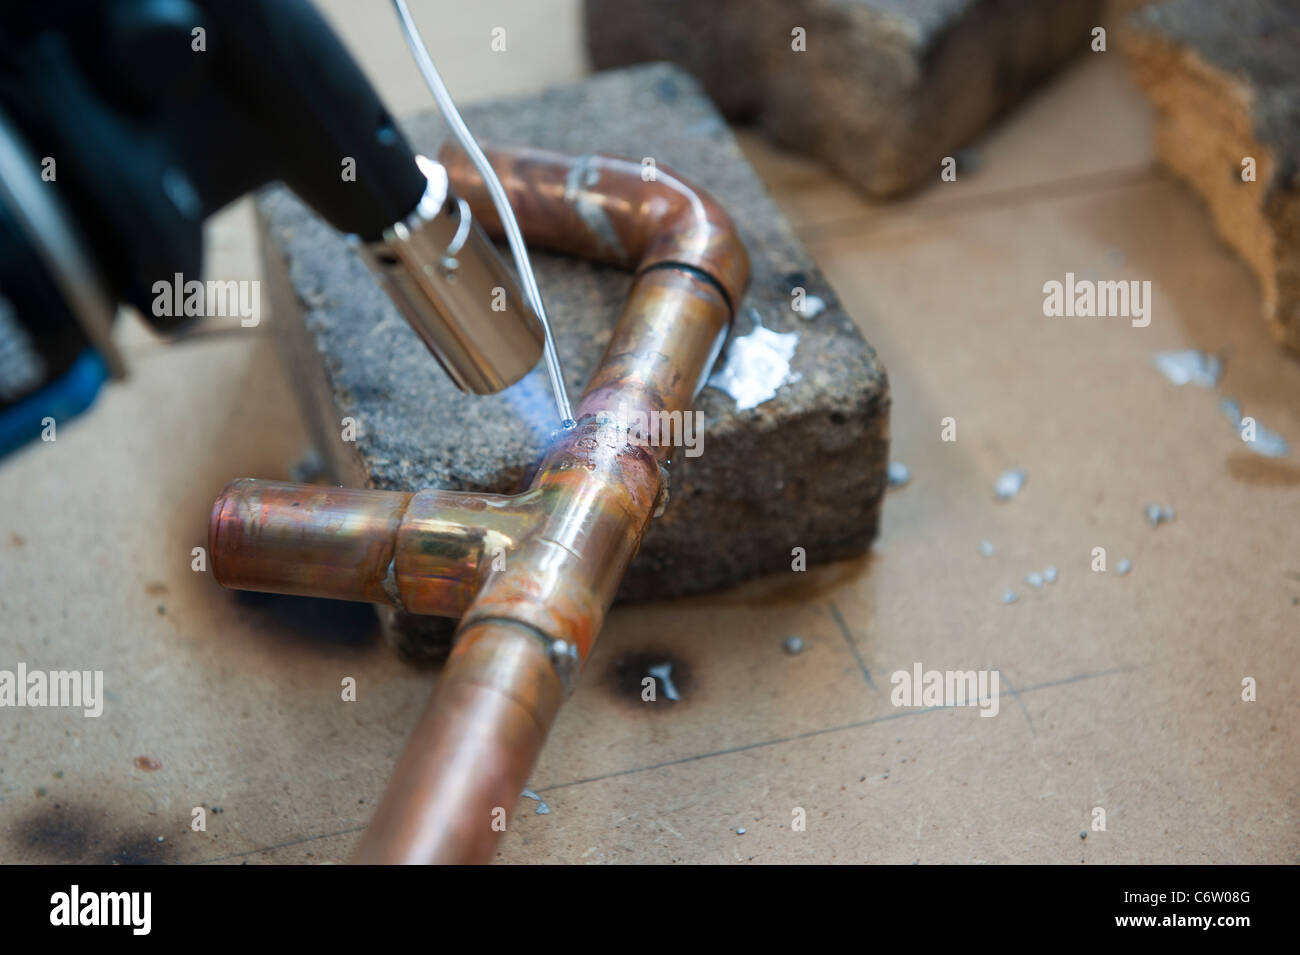 Eine Lötlampe erhitzt Kupfer Heizungsrohr für den Einsatz in Rohrleitungen  Stockfotografie - Alamy